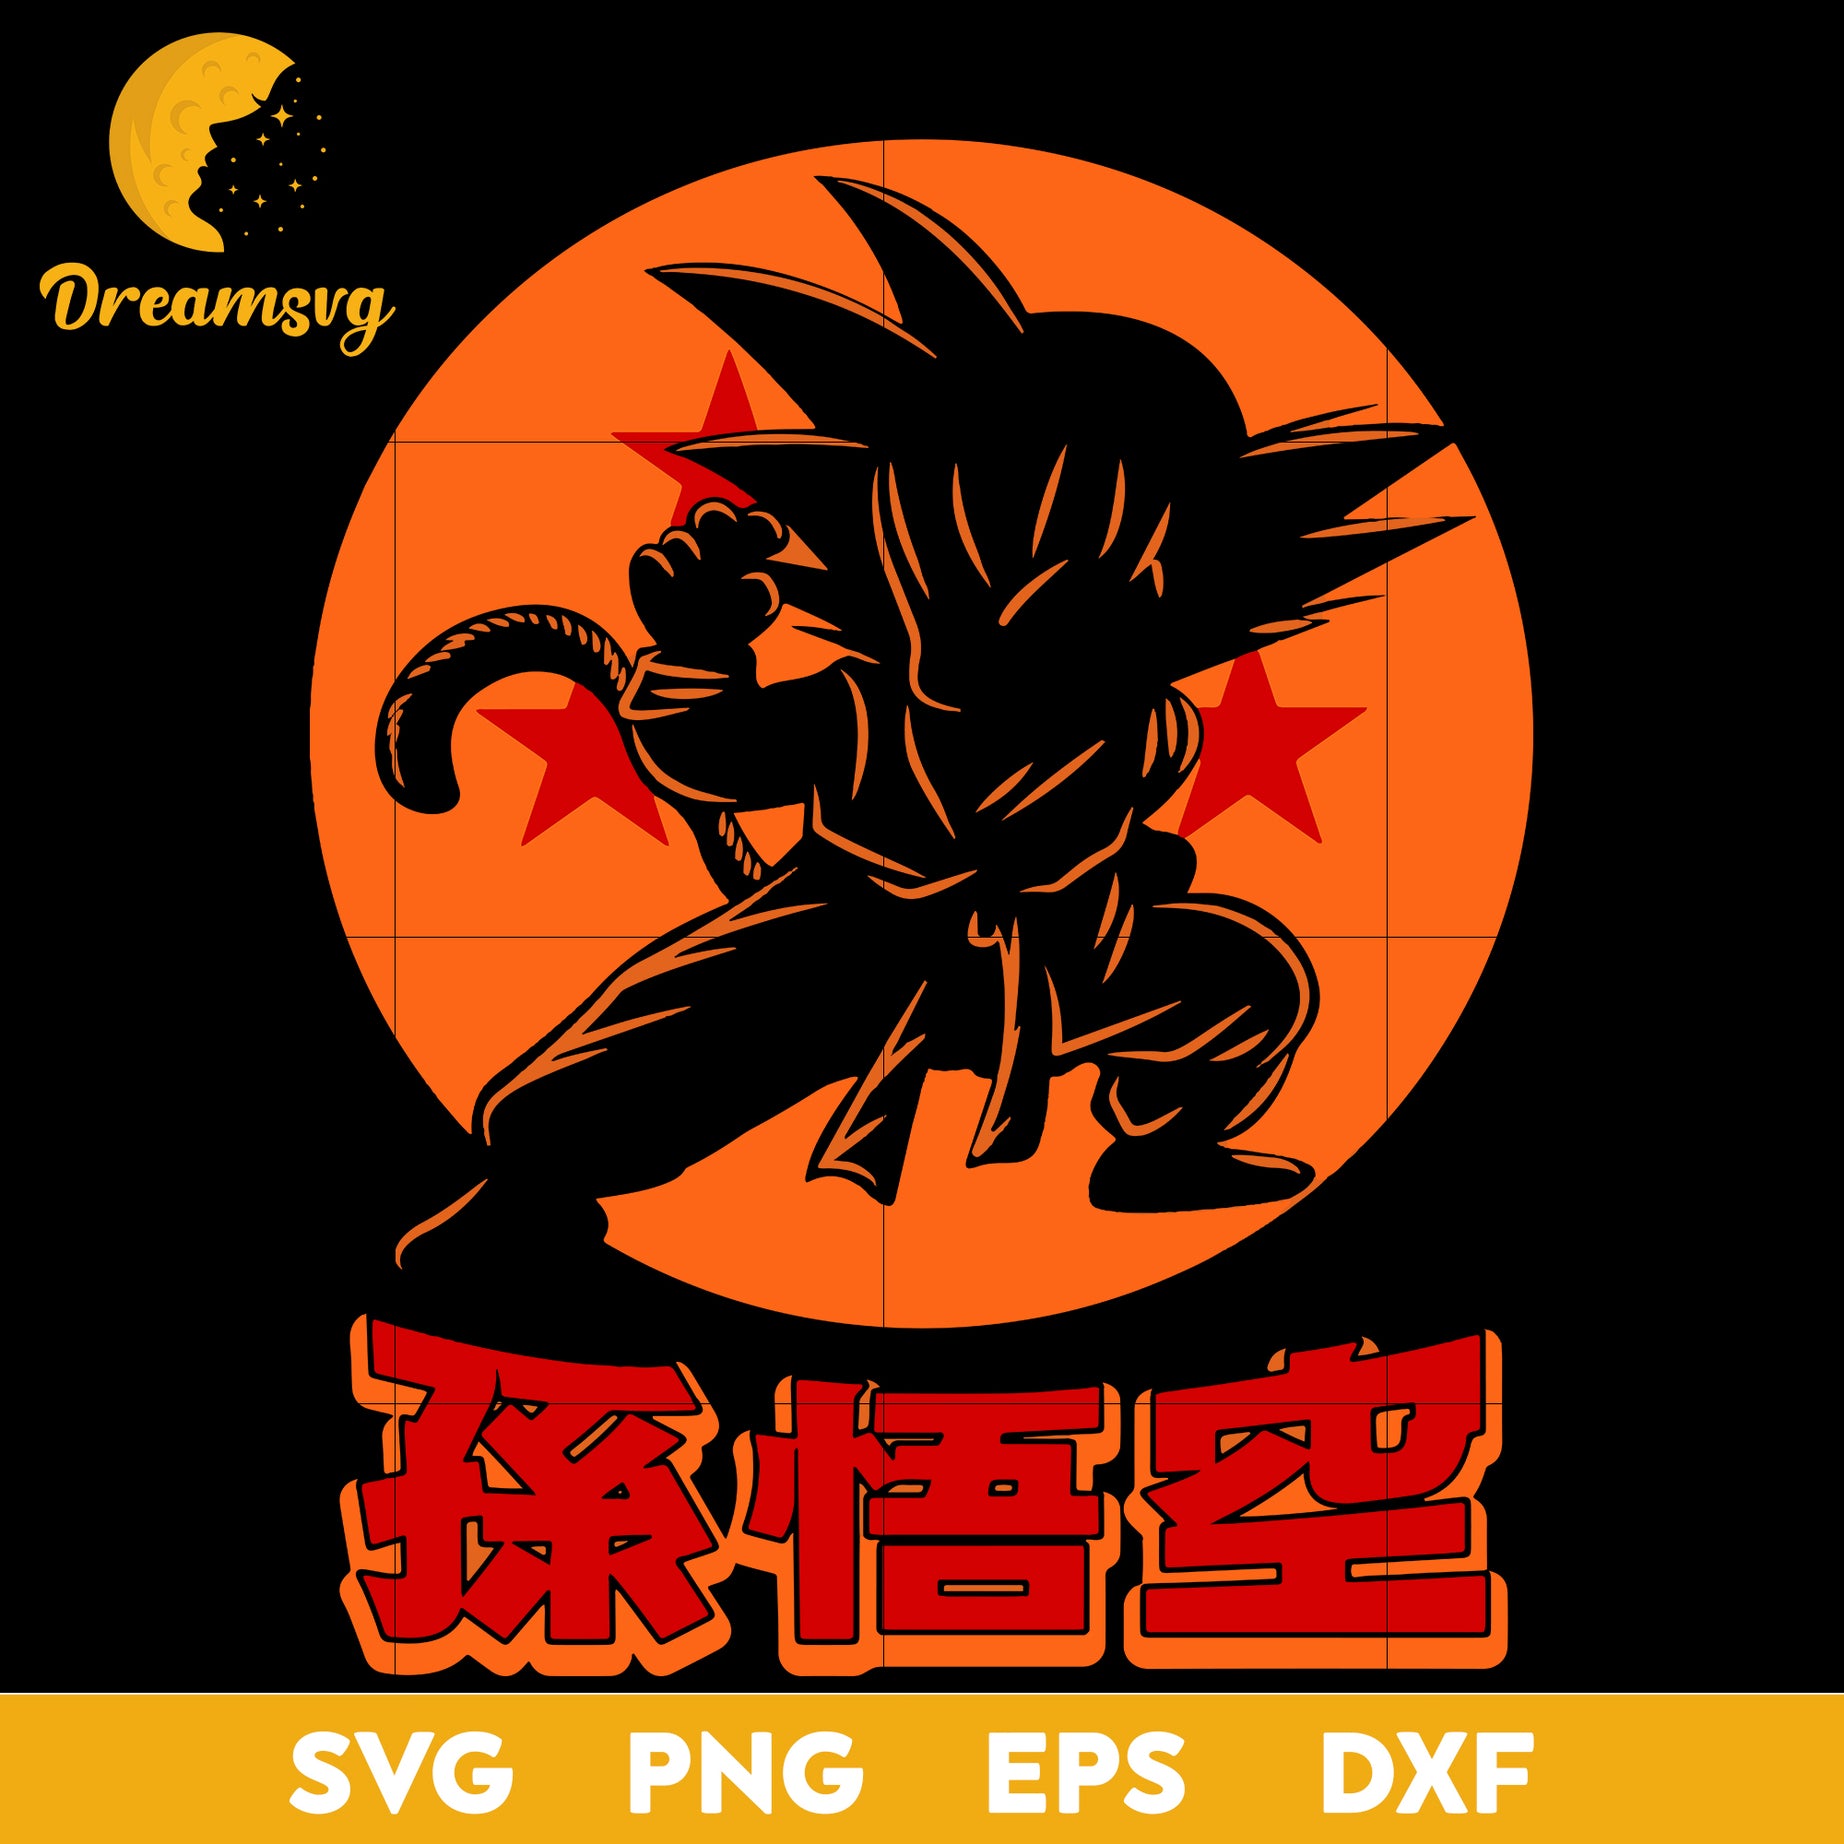 Goku Dragon Ball Svg, Dragon Ball Z Svg, Anime Manga Goku Svg, file for cricut, Anime svg, png, eps, dxf digital download